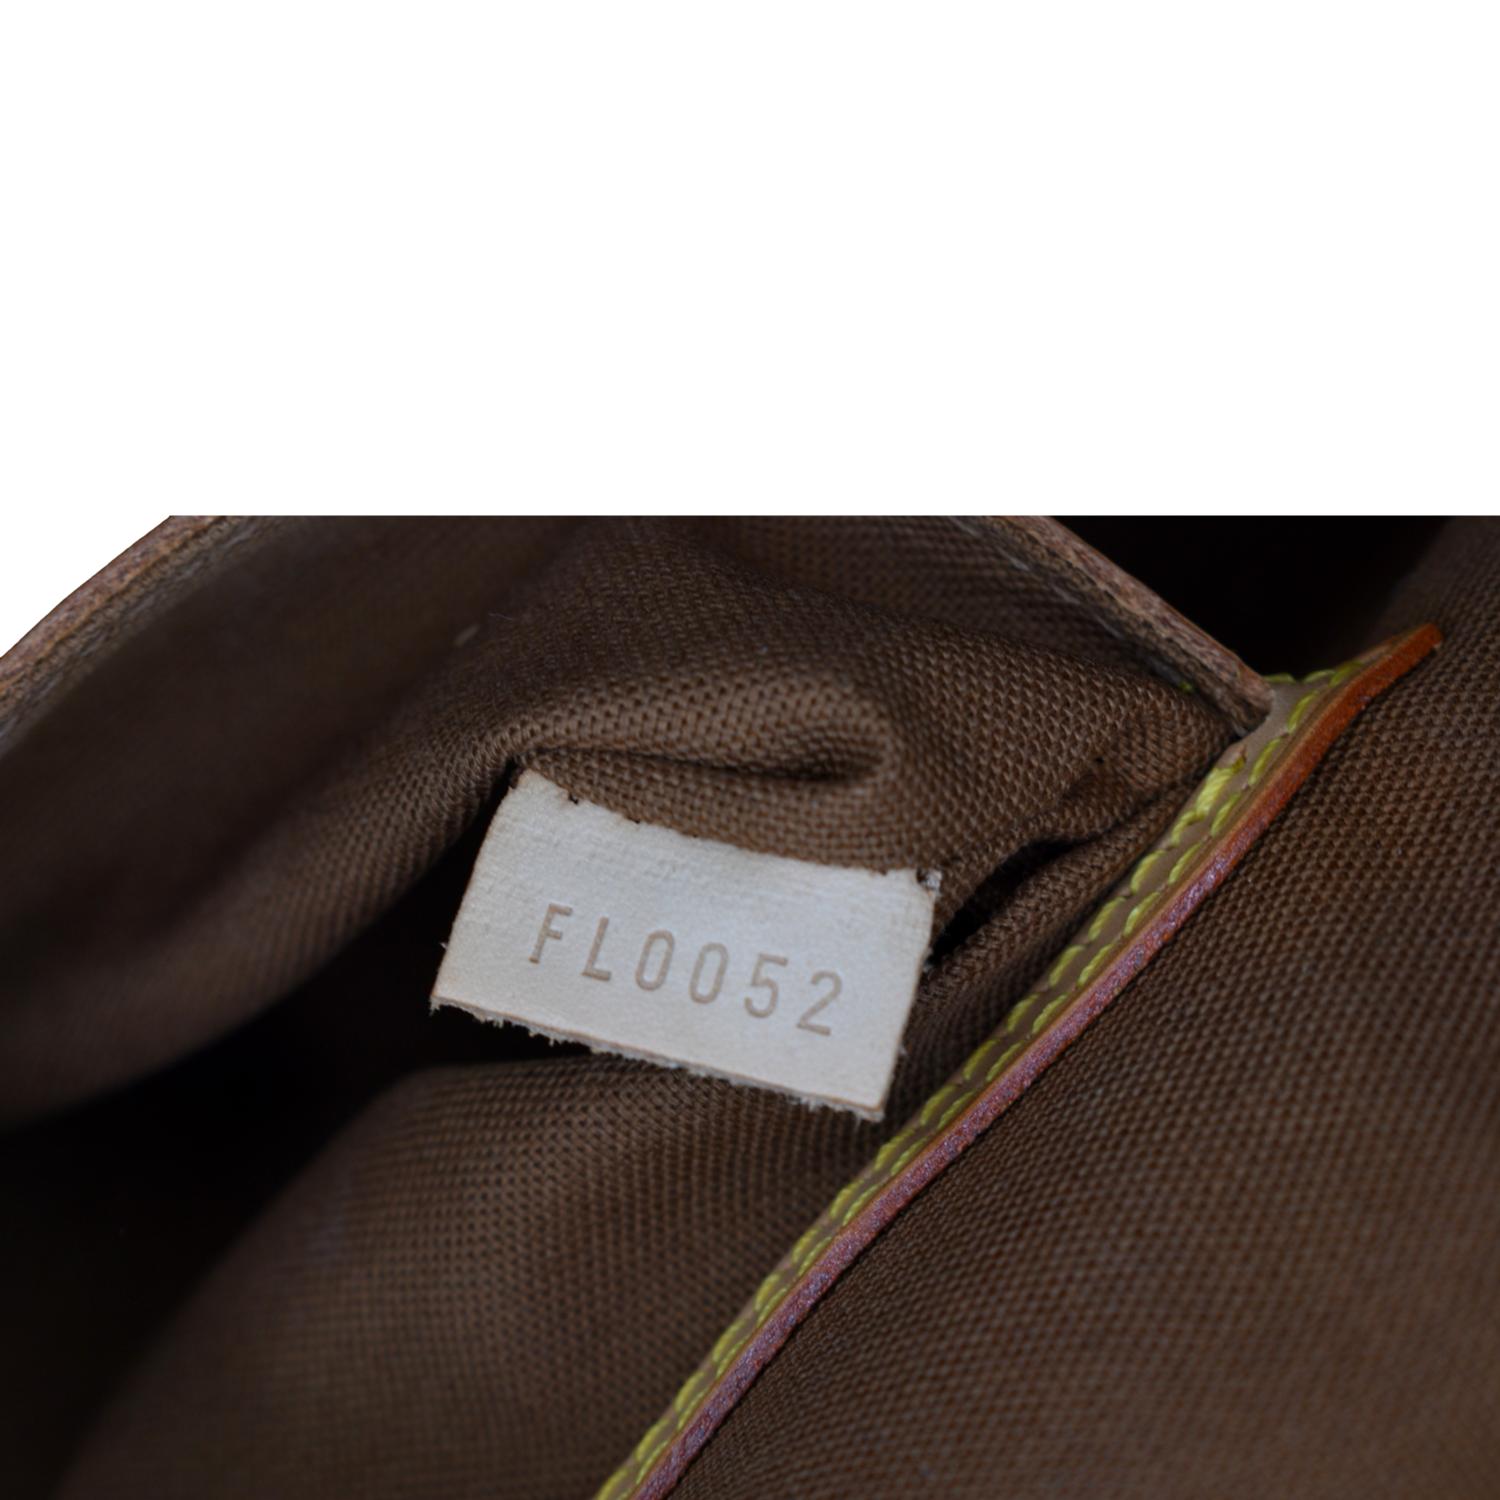 Louis+Vuitton+Alma+Shoulder+Bag+PM+Brown+Canvas%2FLeather for sale